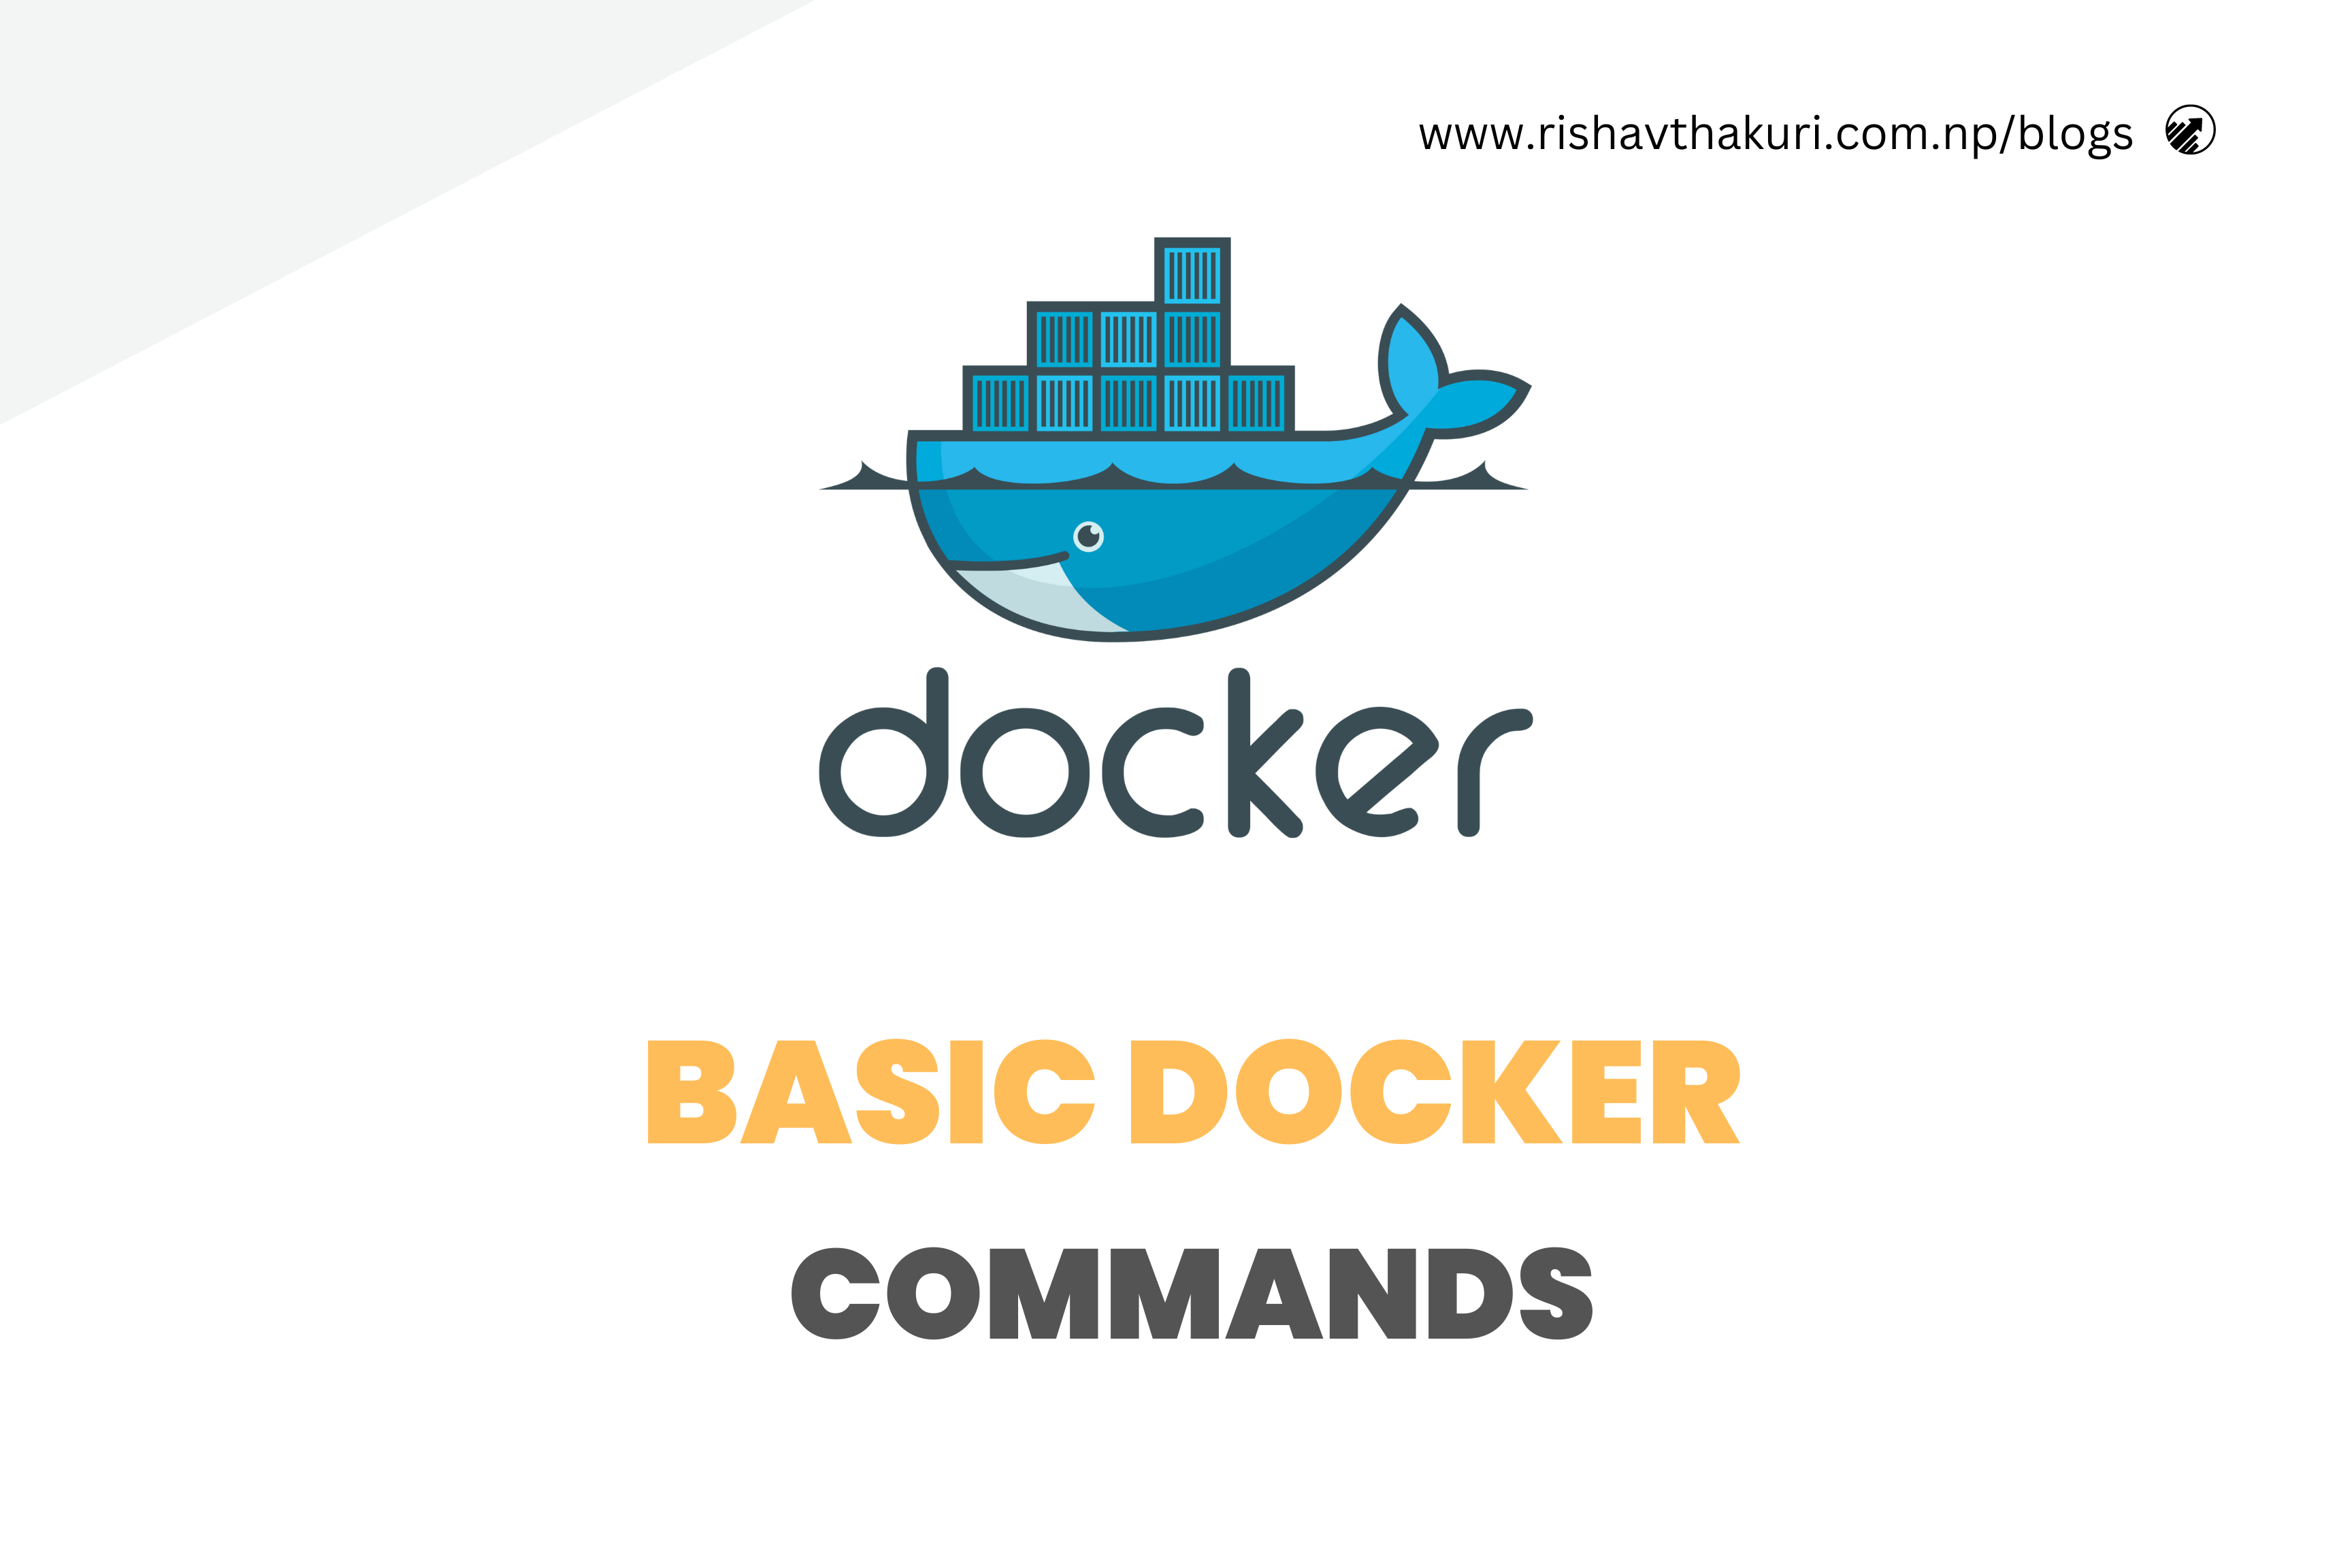 Basics Docker Commands